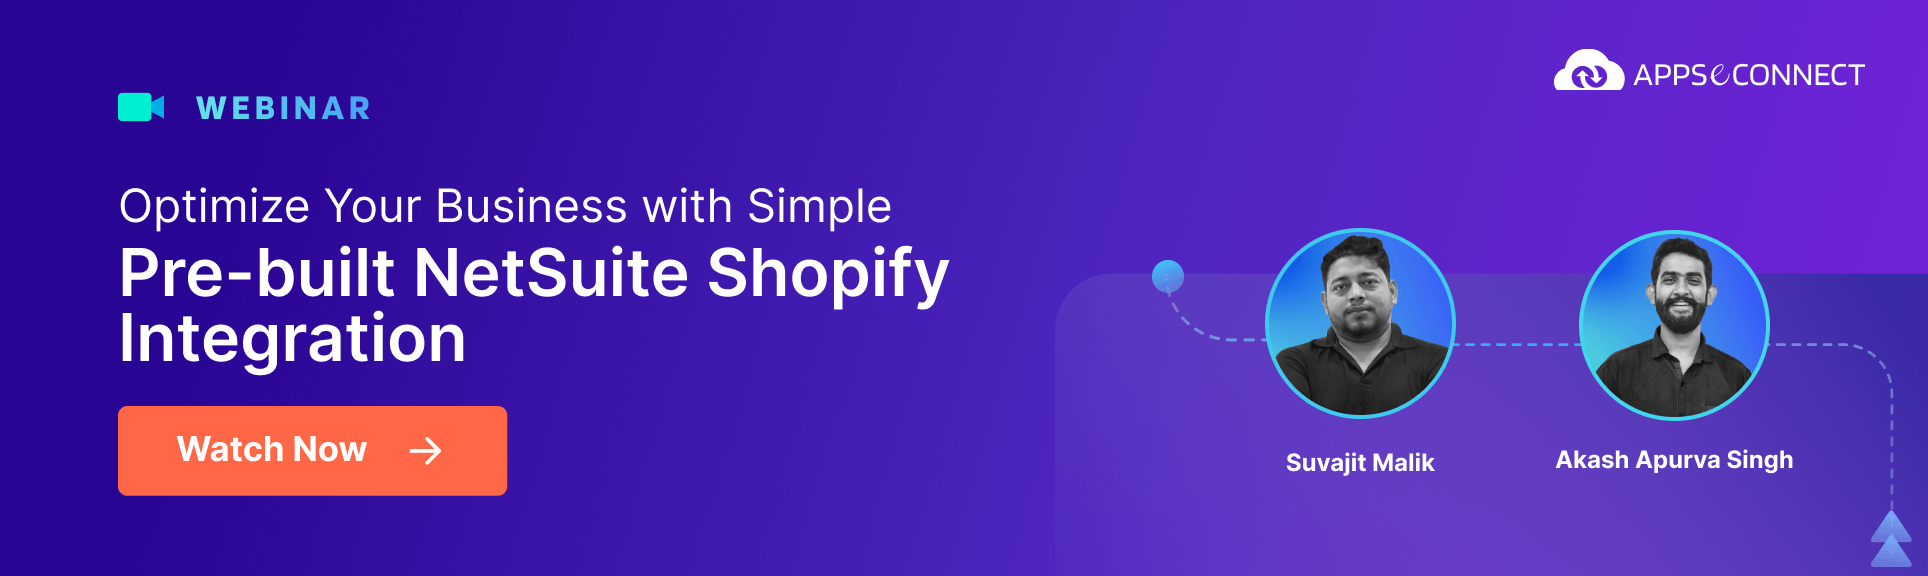 Webinar Recap Optimize Your Business with Simple, Pre-Built - NetSuite Shopify Integration CTA